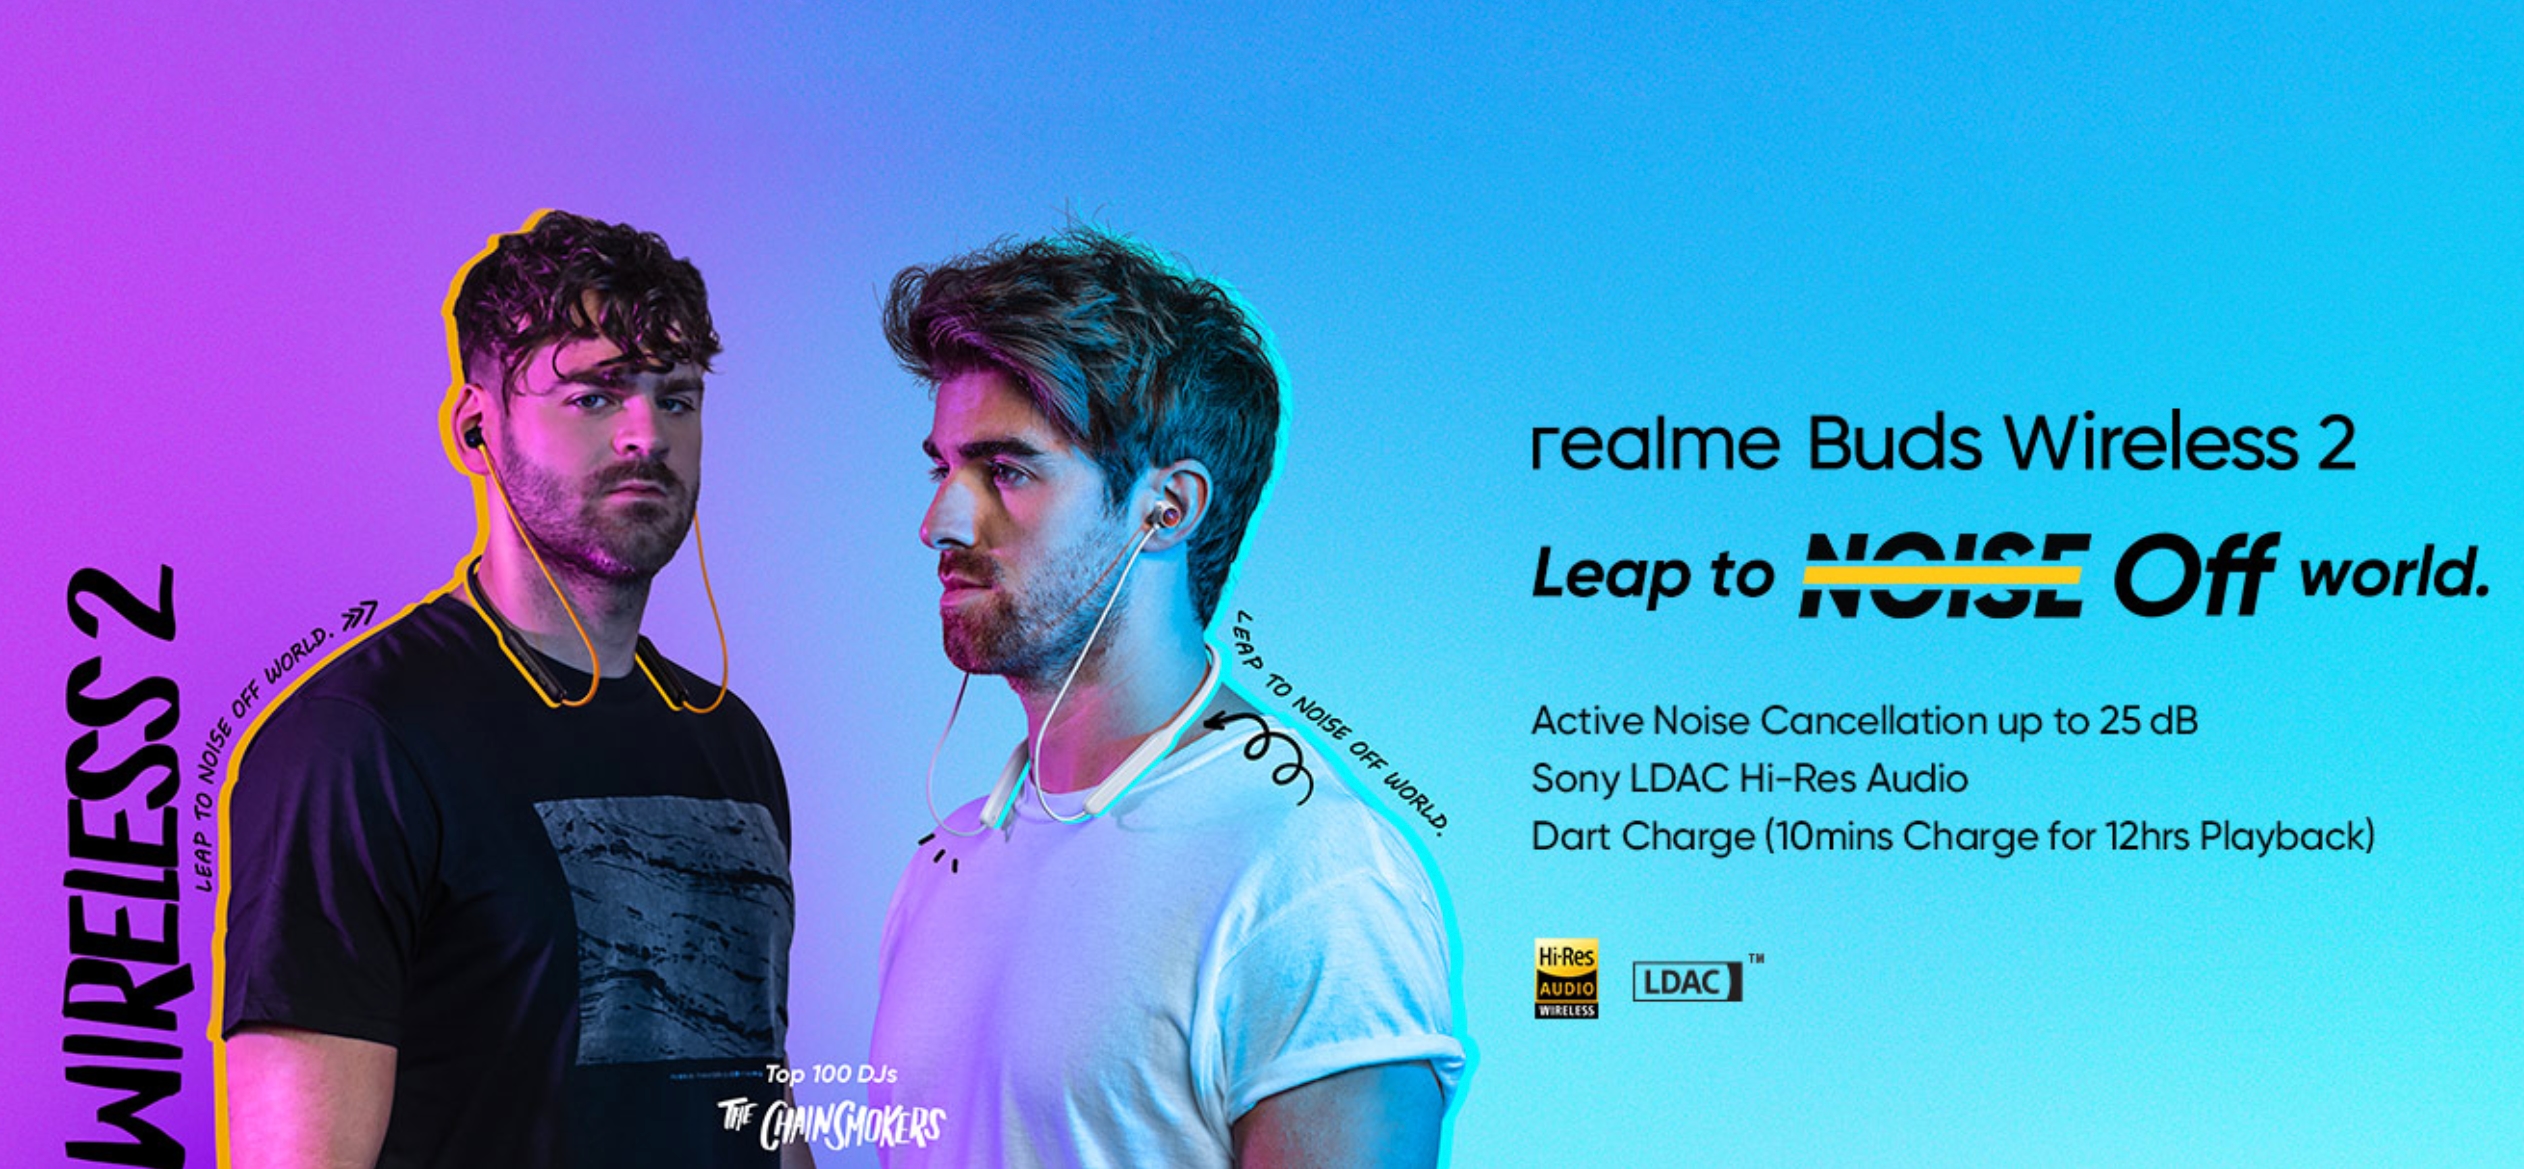 Realme enthüllt 48 $ Buds Wireless 2 mit Game Mode, ANC, Google Fast Pair und LDAC-Unterstützung